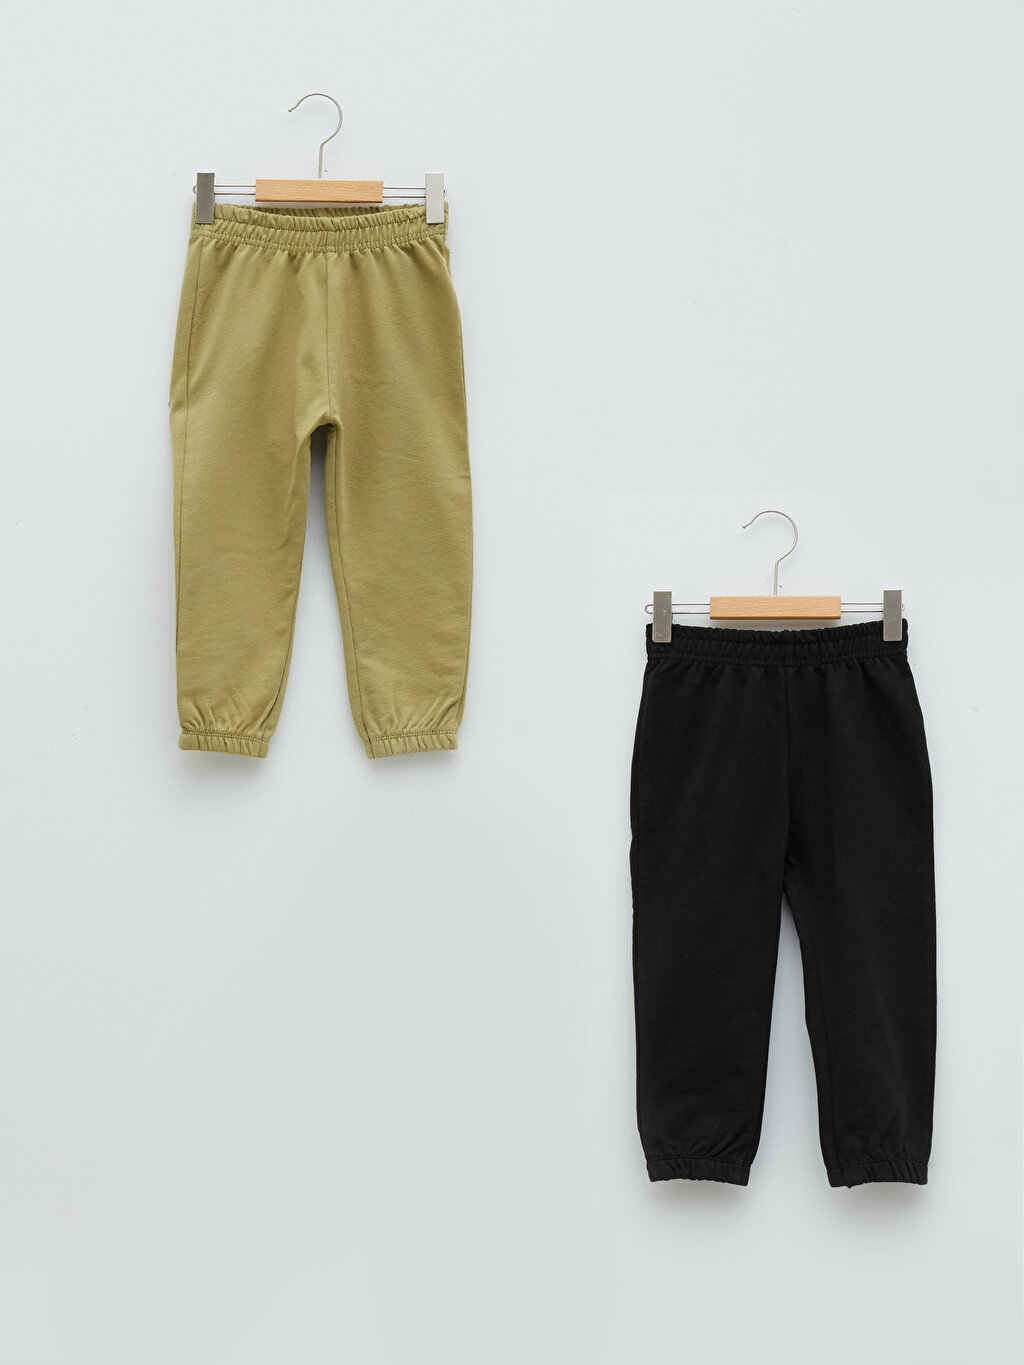 Elastic Waist Basic Baby Boy Trousers 2 Pieces -S23881Z1-GWA - S23881Z1-GWA  - LC Waikiki